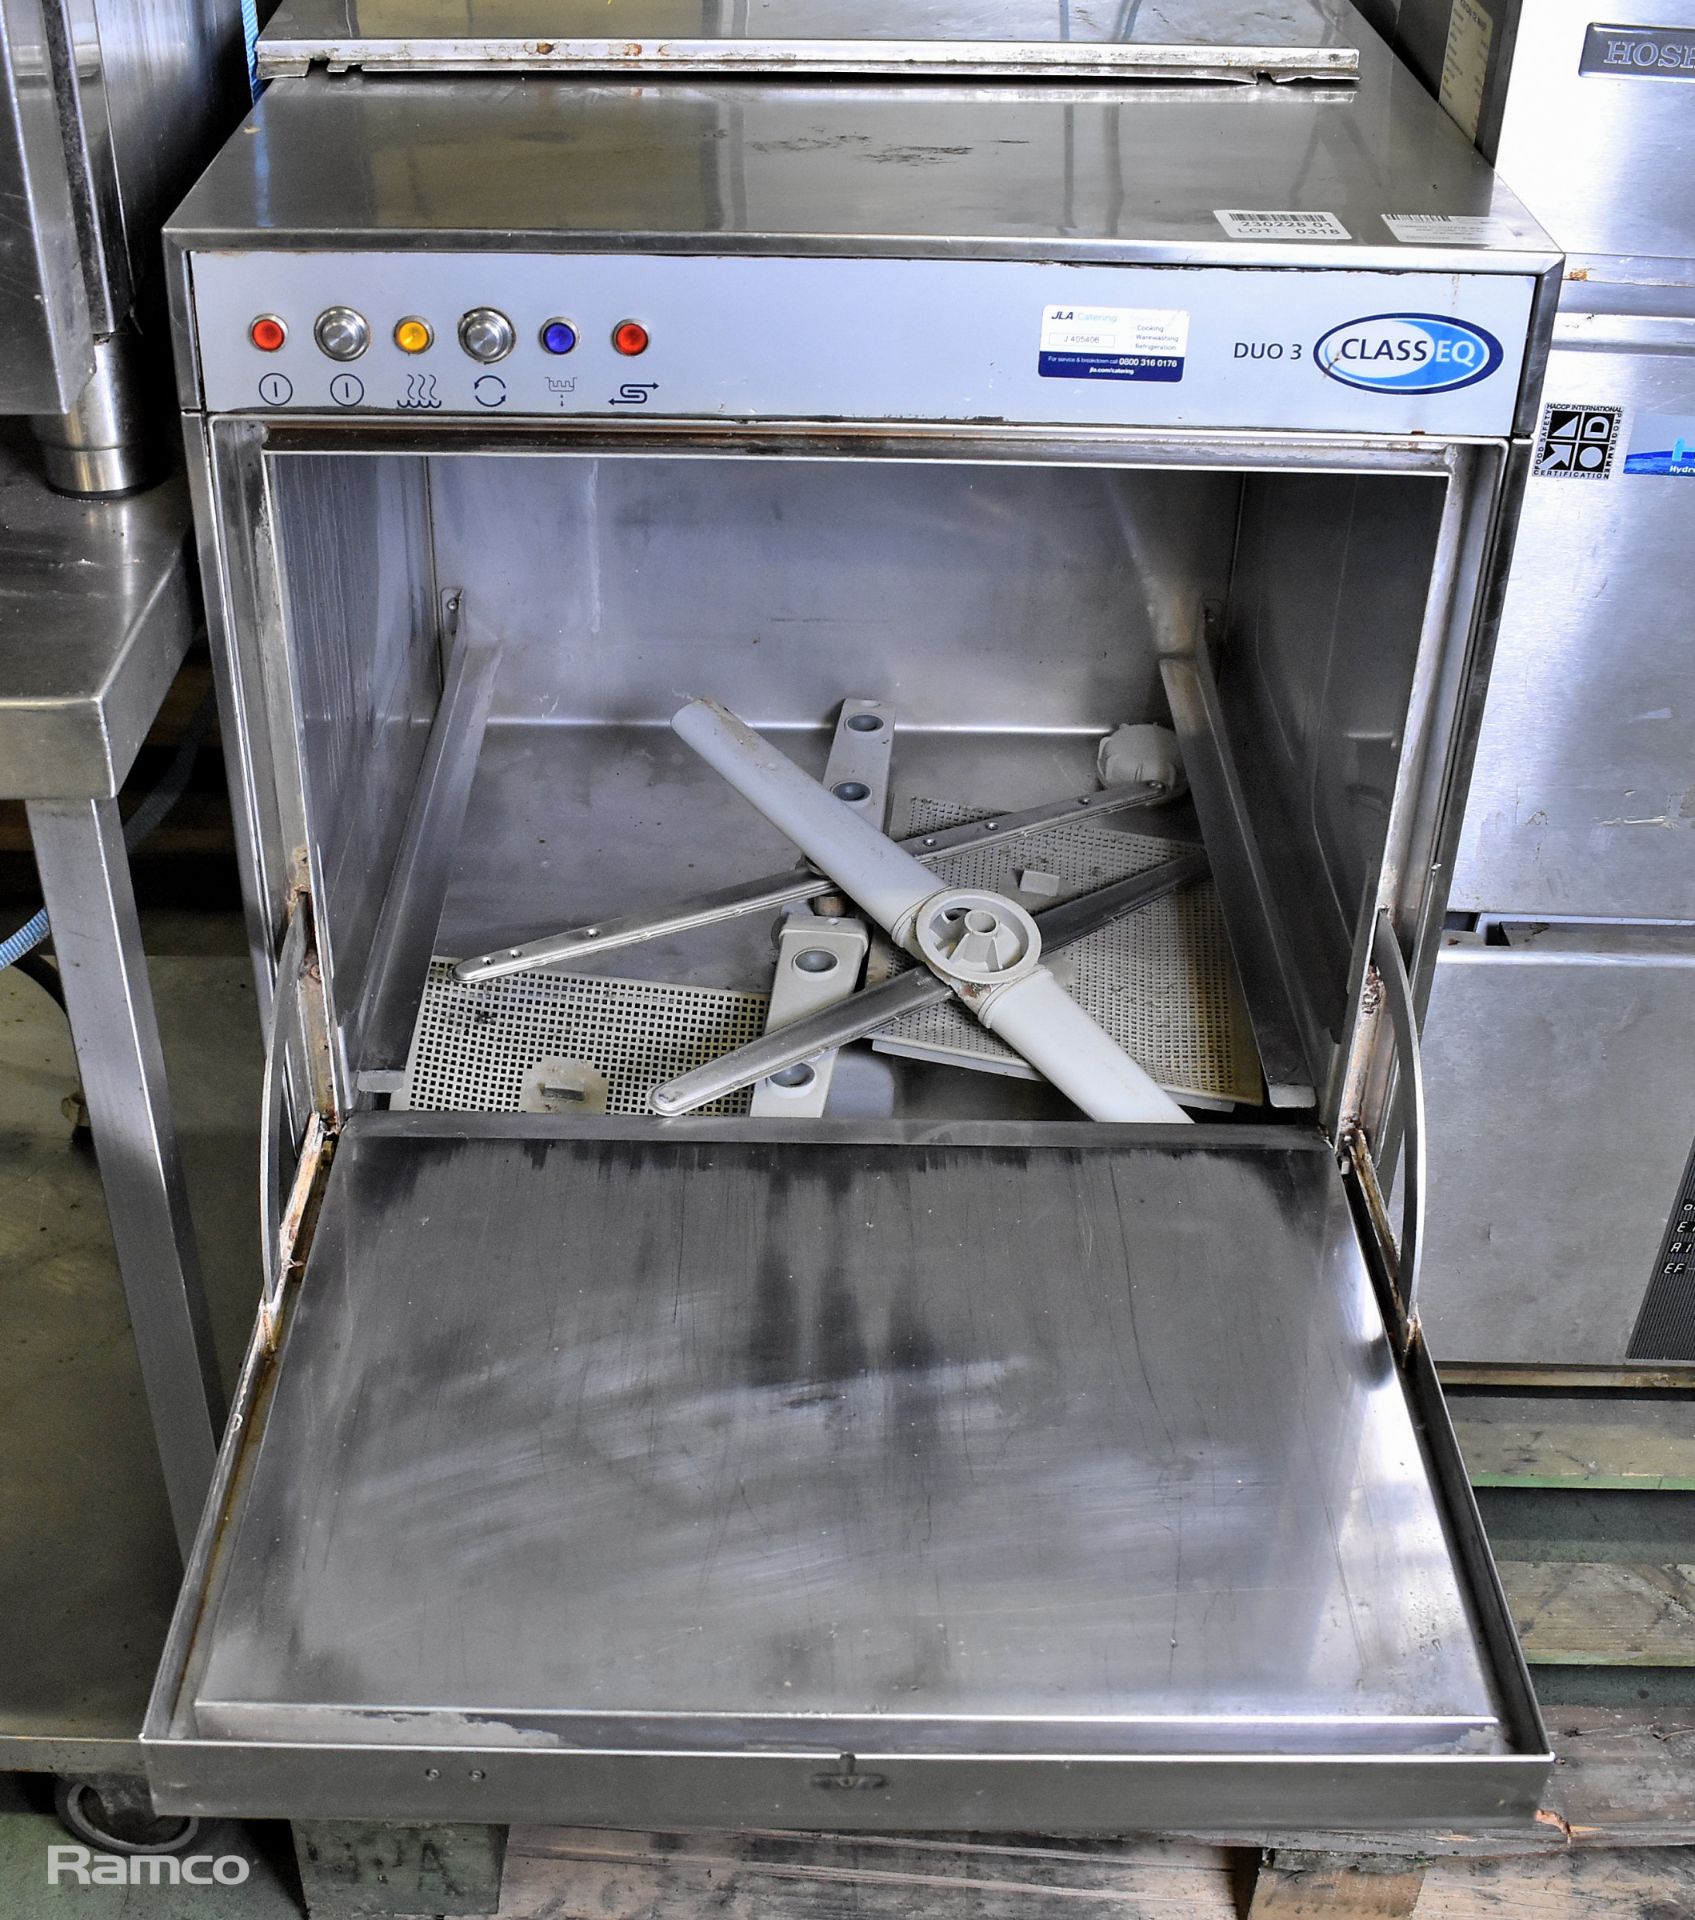 Class EQ DU03/WS stainless steel under counter dishwasher - Bild 3 aus 6